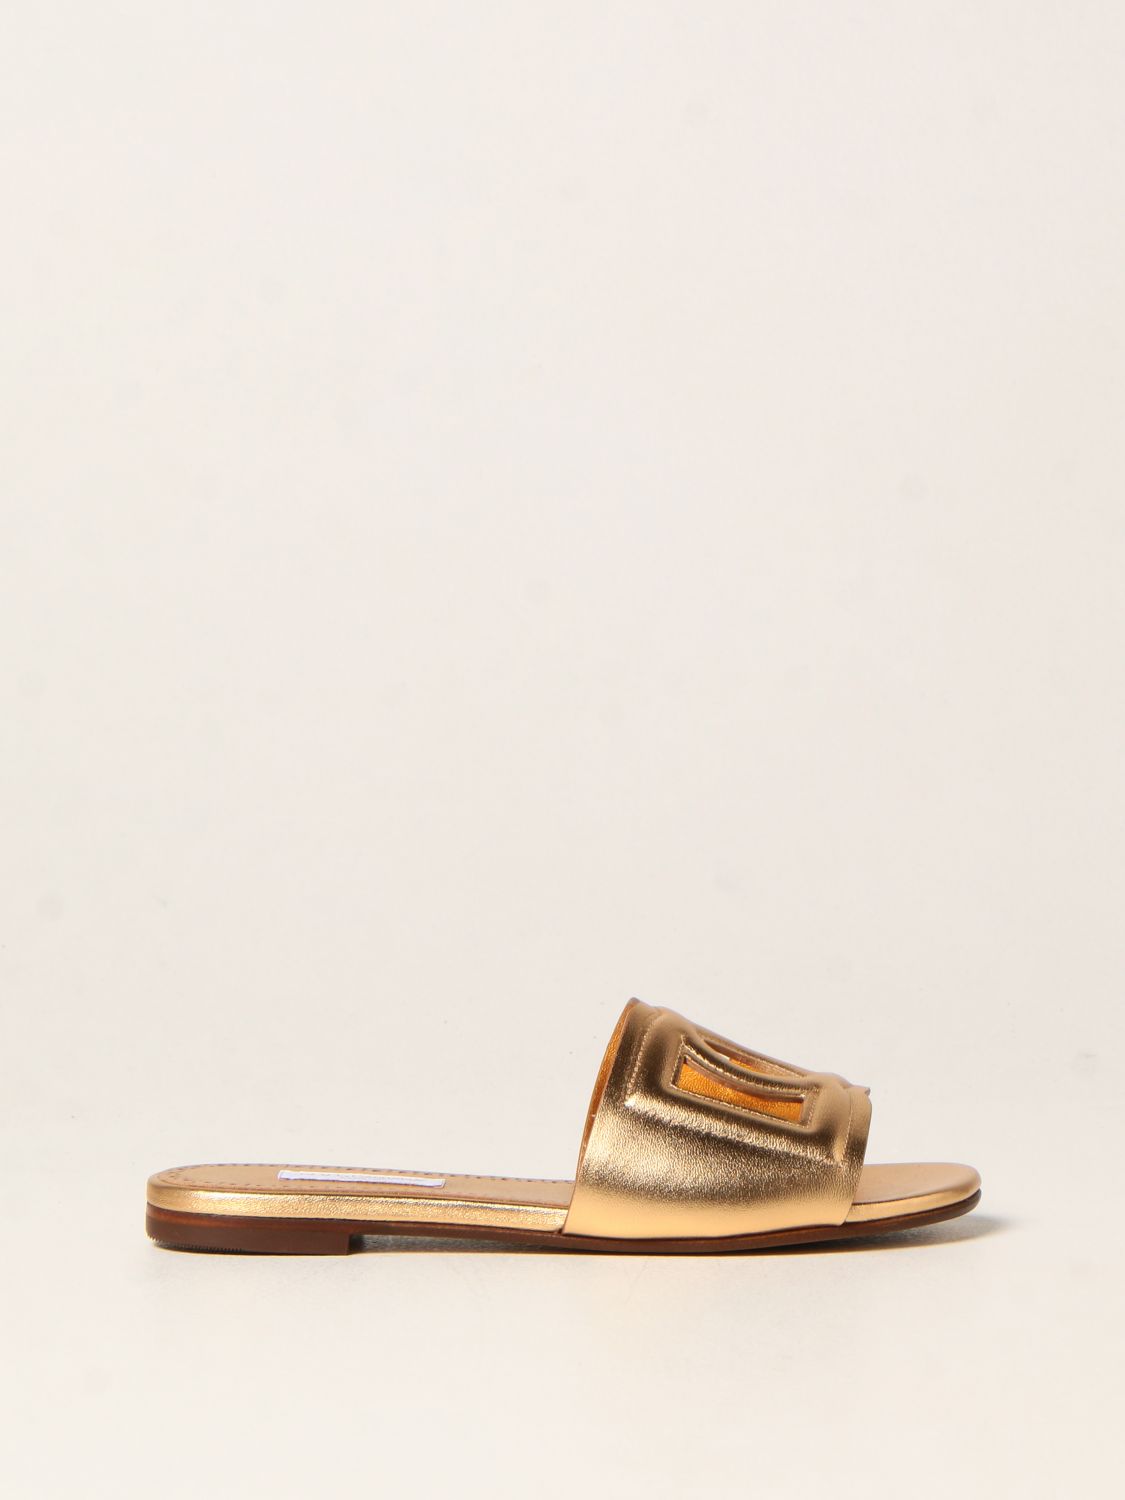 DOLCE & GABBANA: Sandalia tipo en piel laminada, | Zapatos Dolce & Gabbana D11032A5439 en línea en GIGLIO.COM